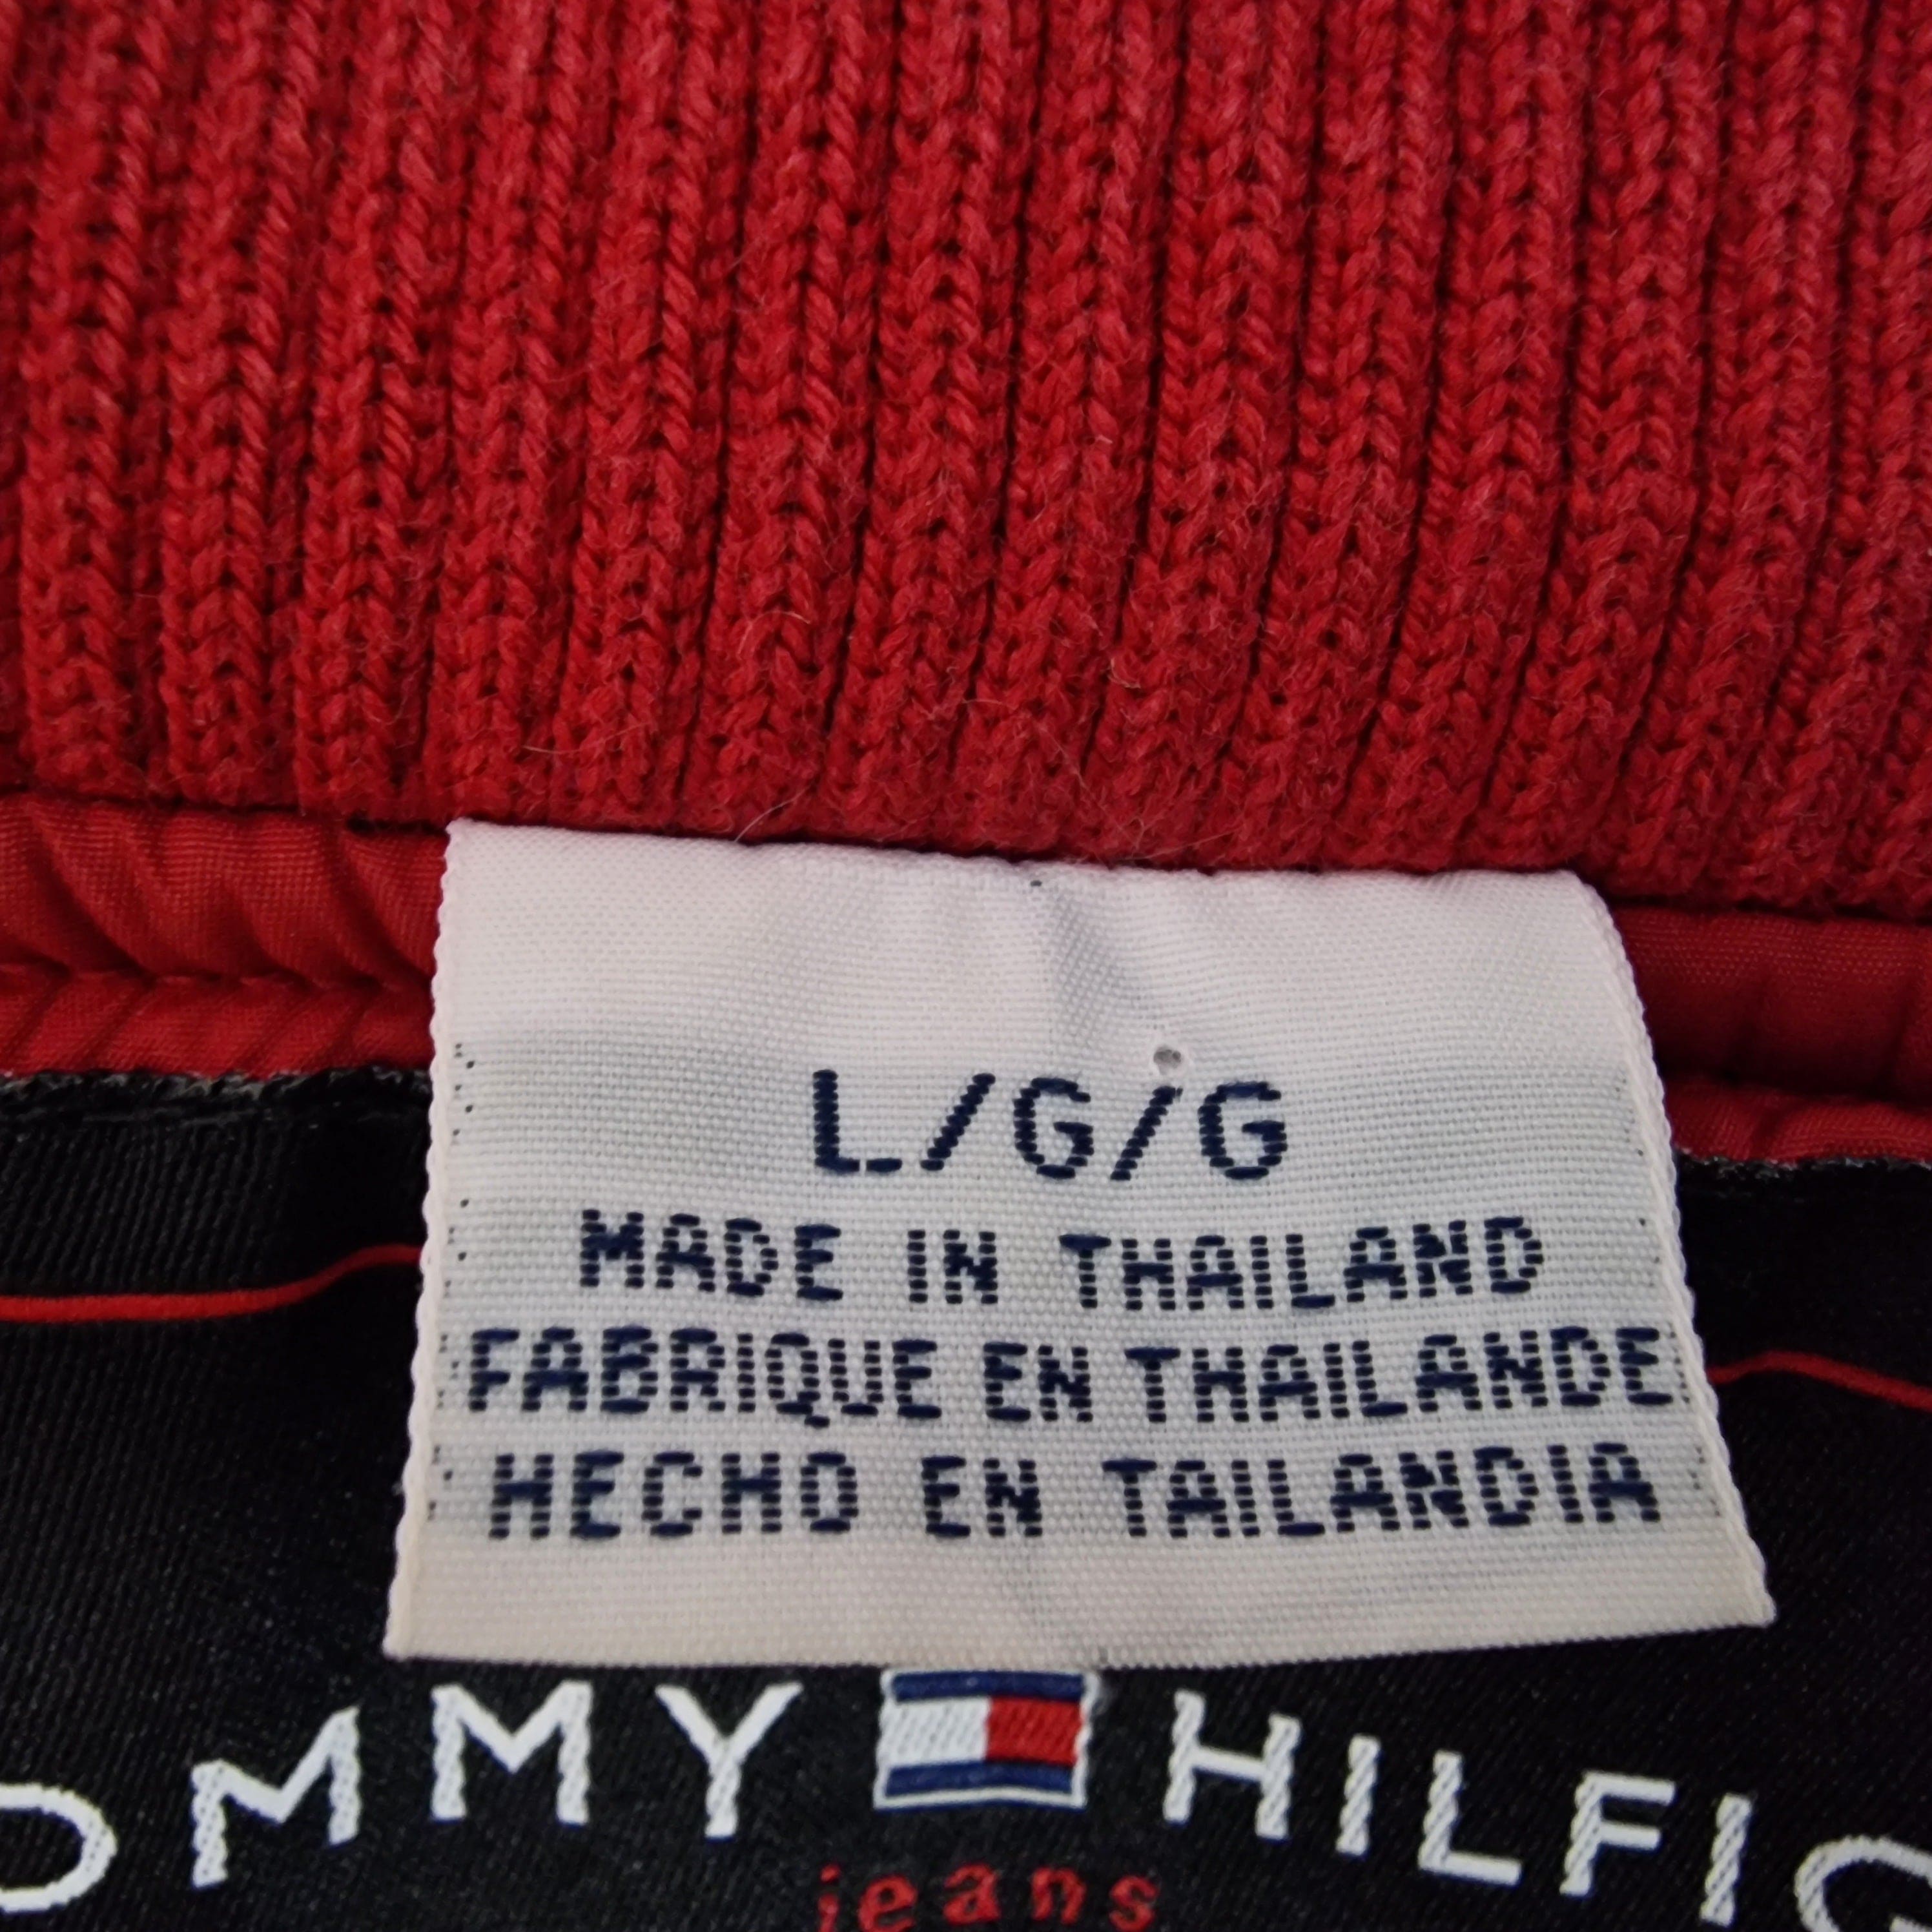 Unisex Tommy Hilfiger Red Flight Jacket UK Large - Coat